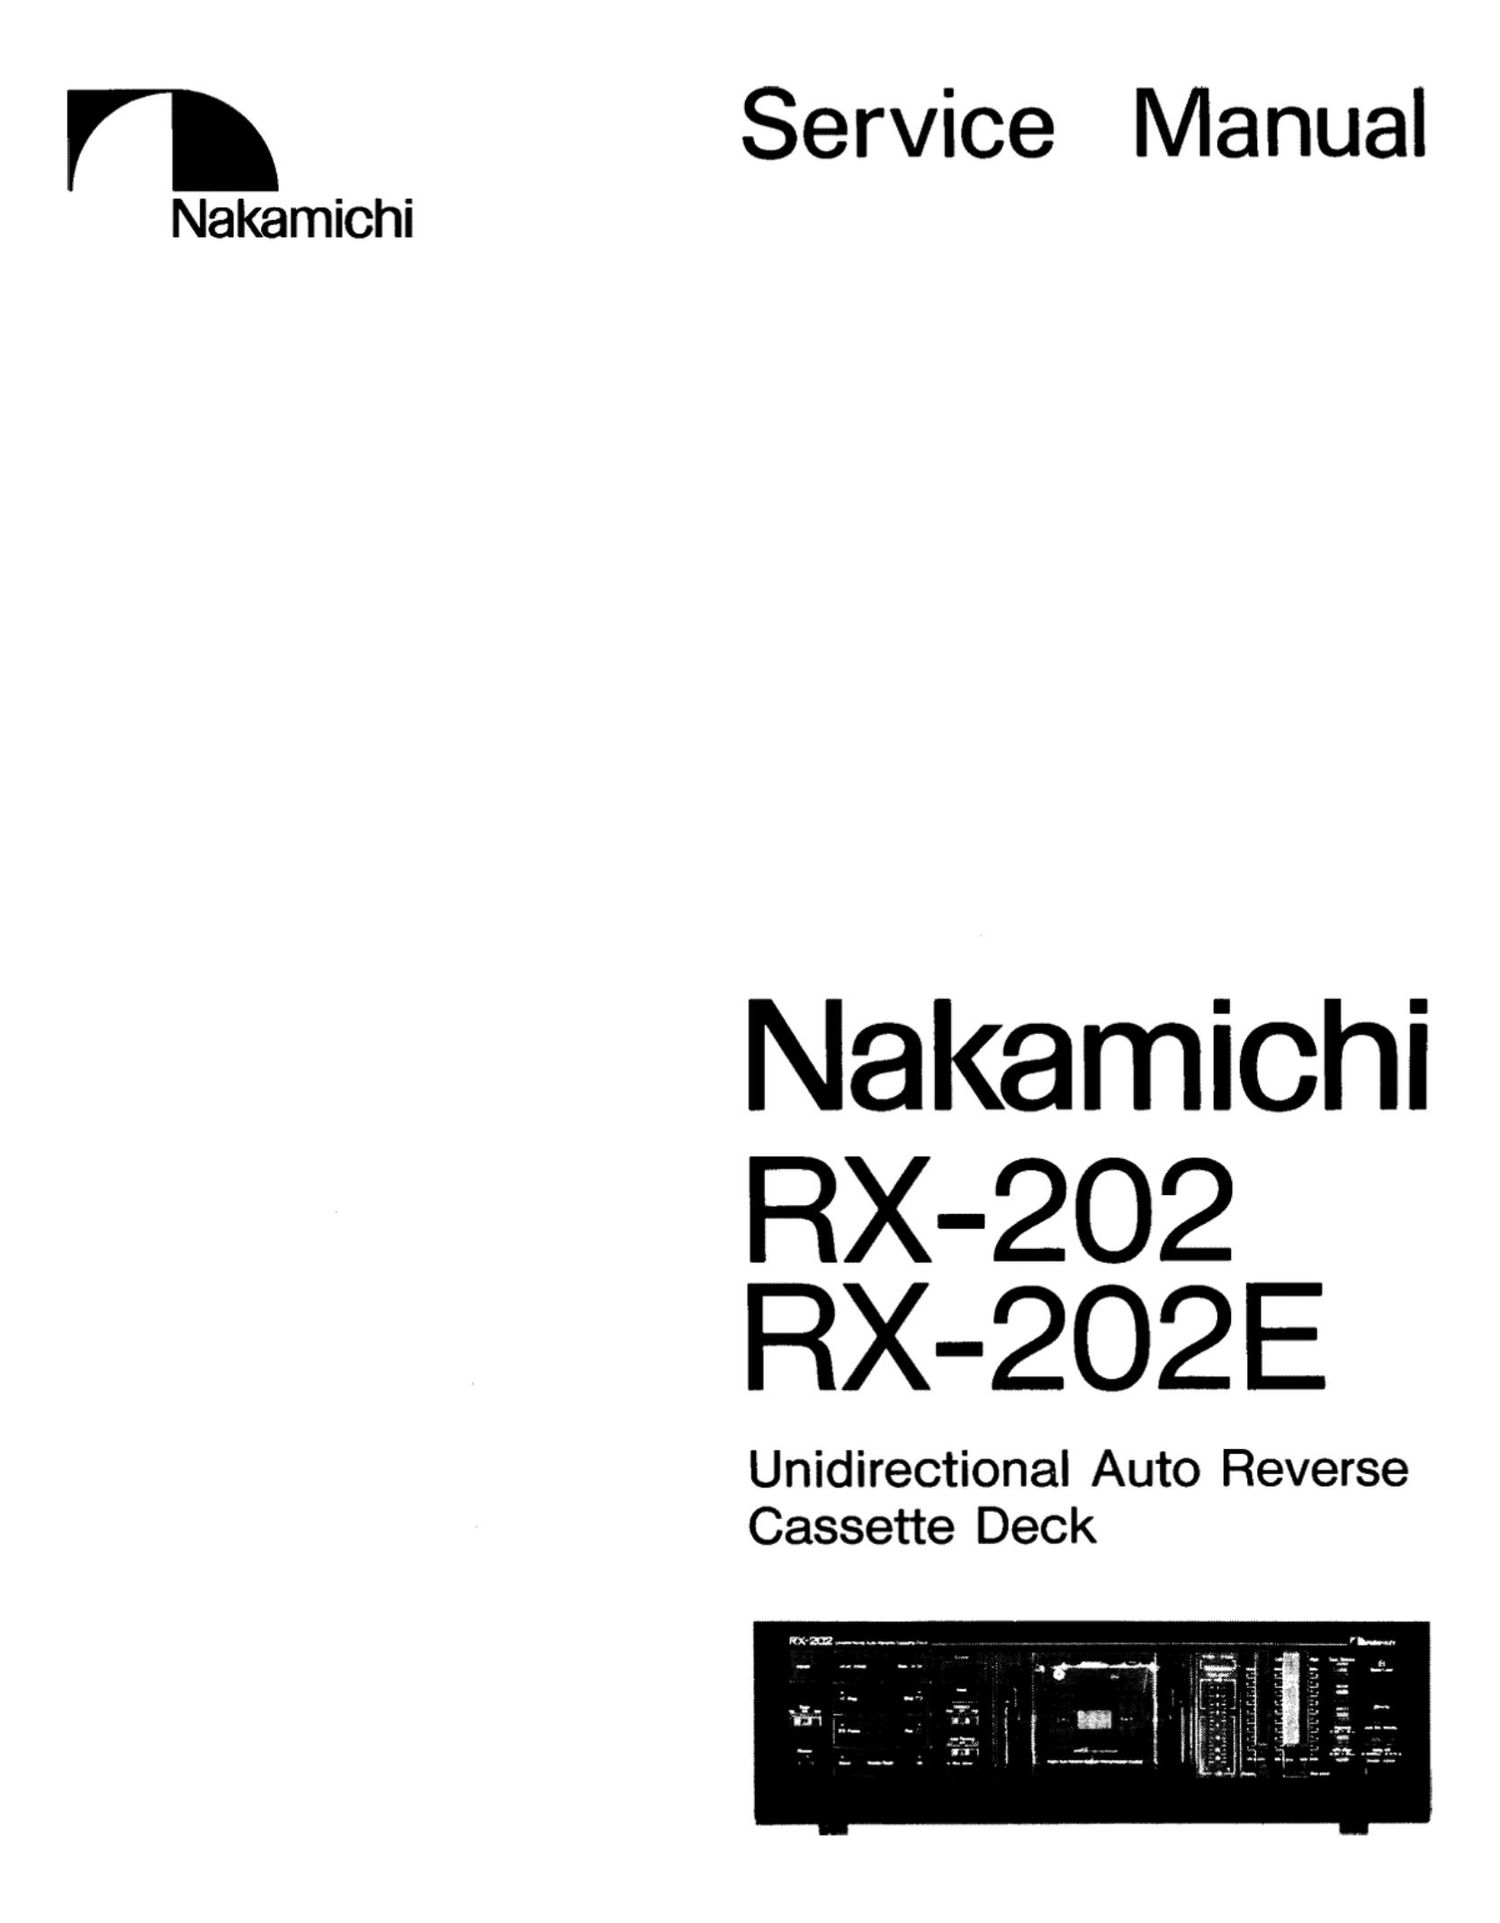 Nakamichi RX 202 Service Manual